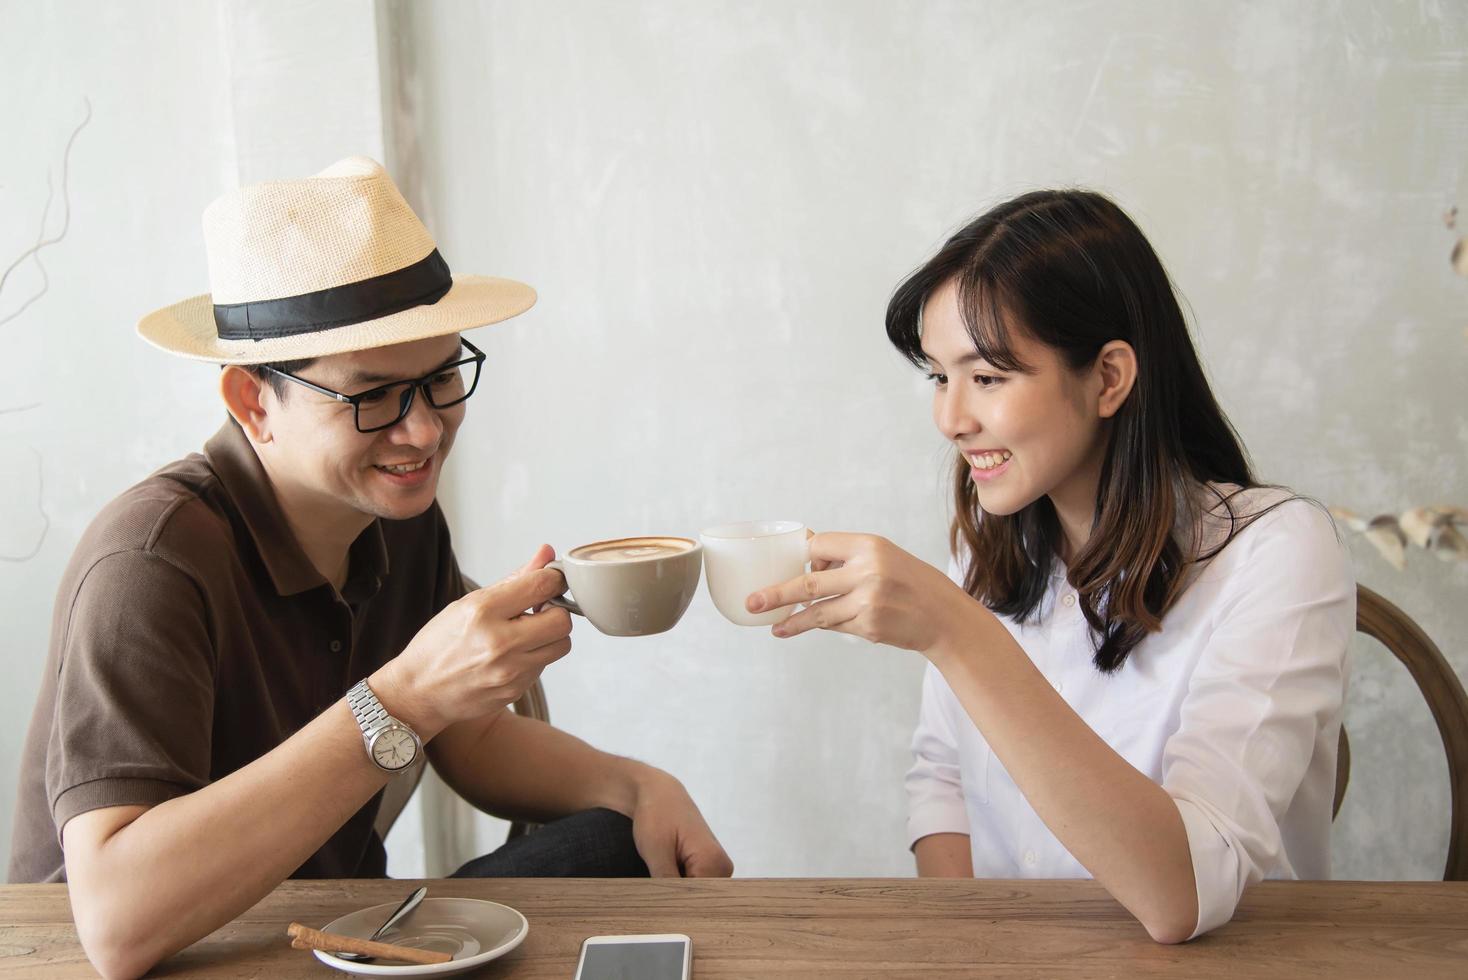 Lässiger Mann und Frau unterhalten sich glücklich, während sie Kaffee trinken und ein Handy suchen - glücklicher Zeitlebensstil im Café foto